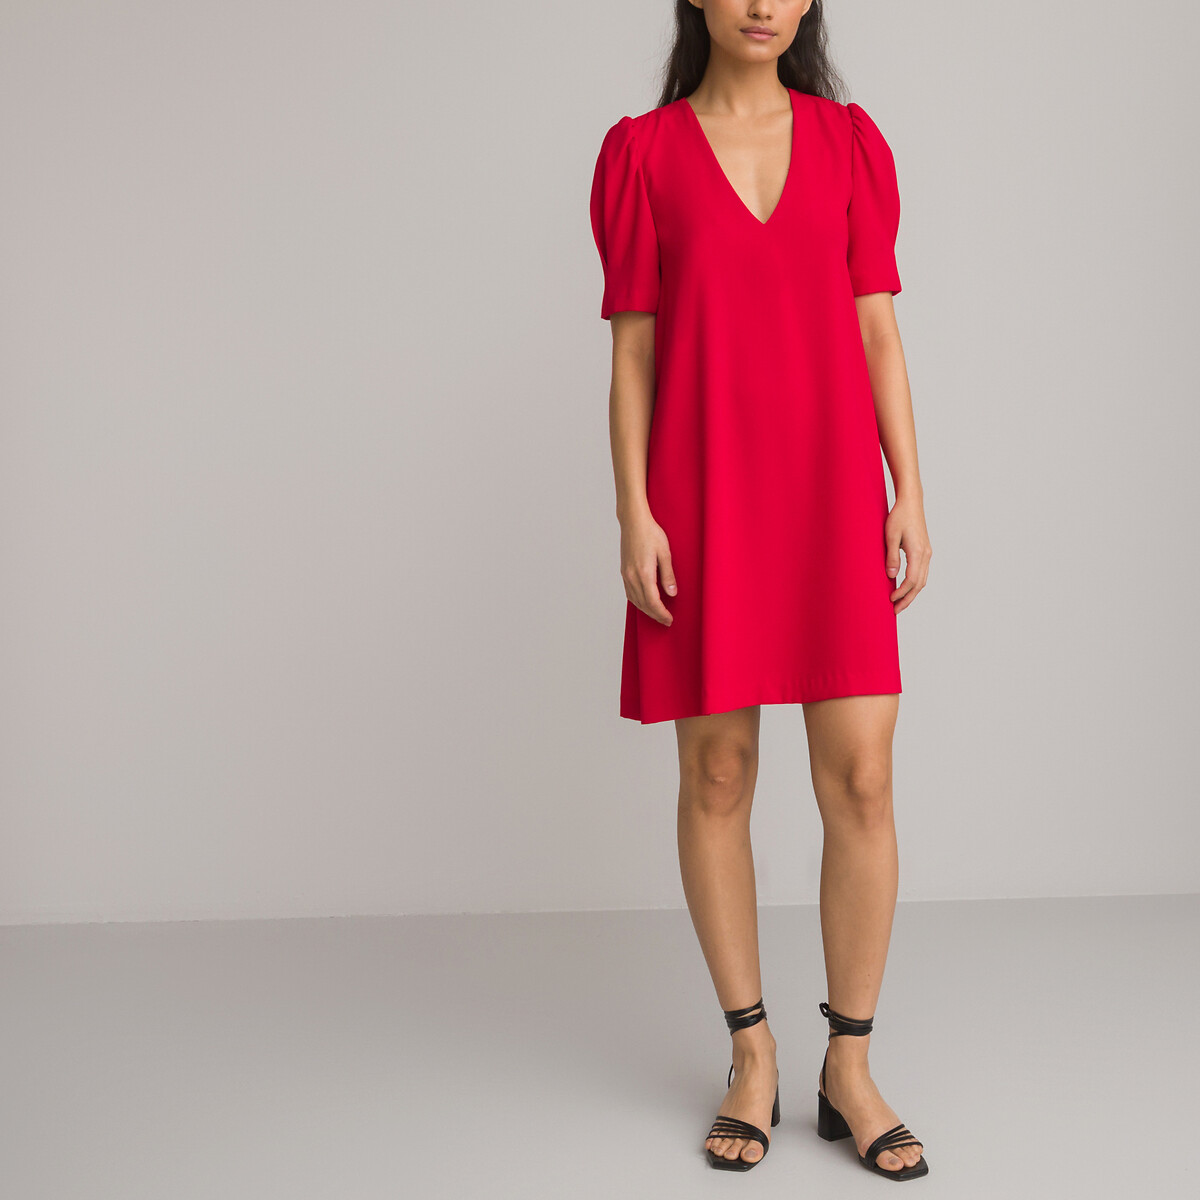 Платье Короткое с V-образным вырезом короткие рукава 54 красный LaRedoute, размер 54 - фото 2